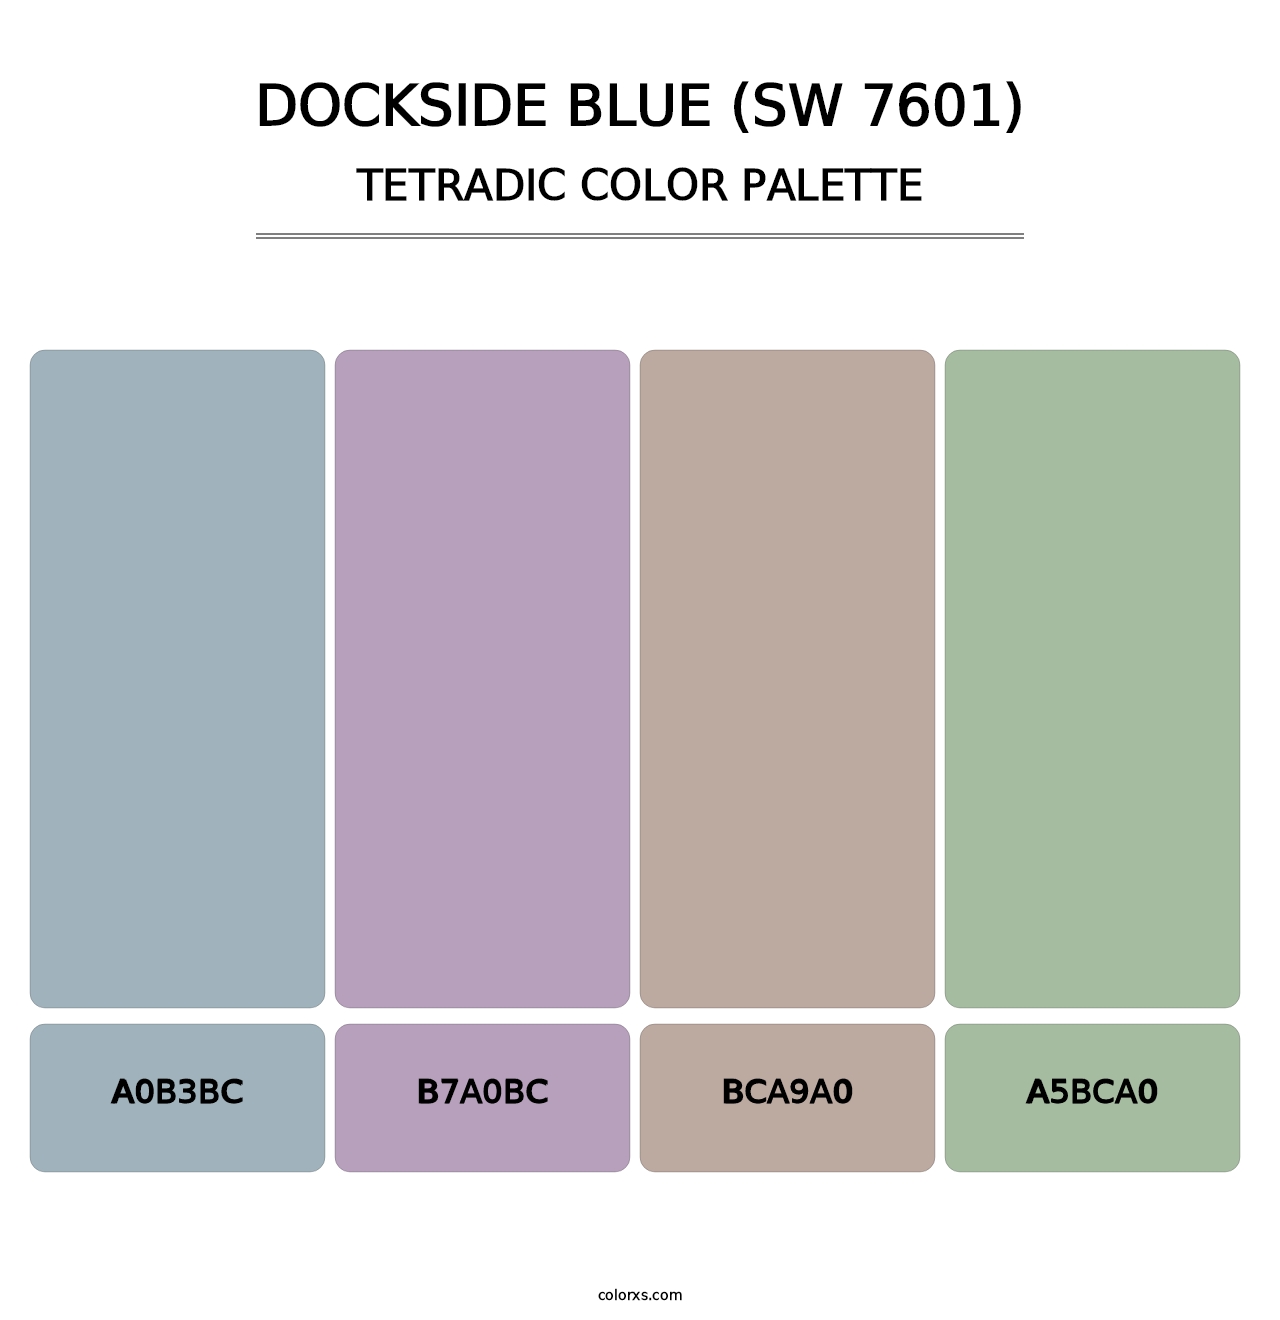 Dockside Blue (SW 7601) - Tetradic Color Palette